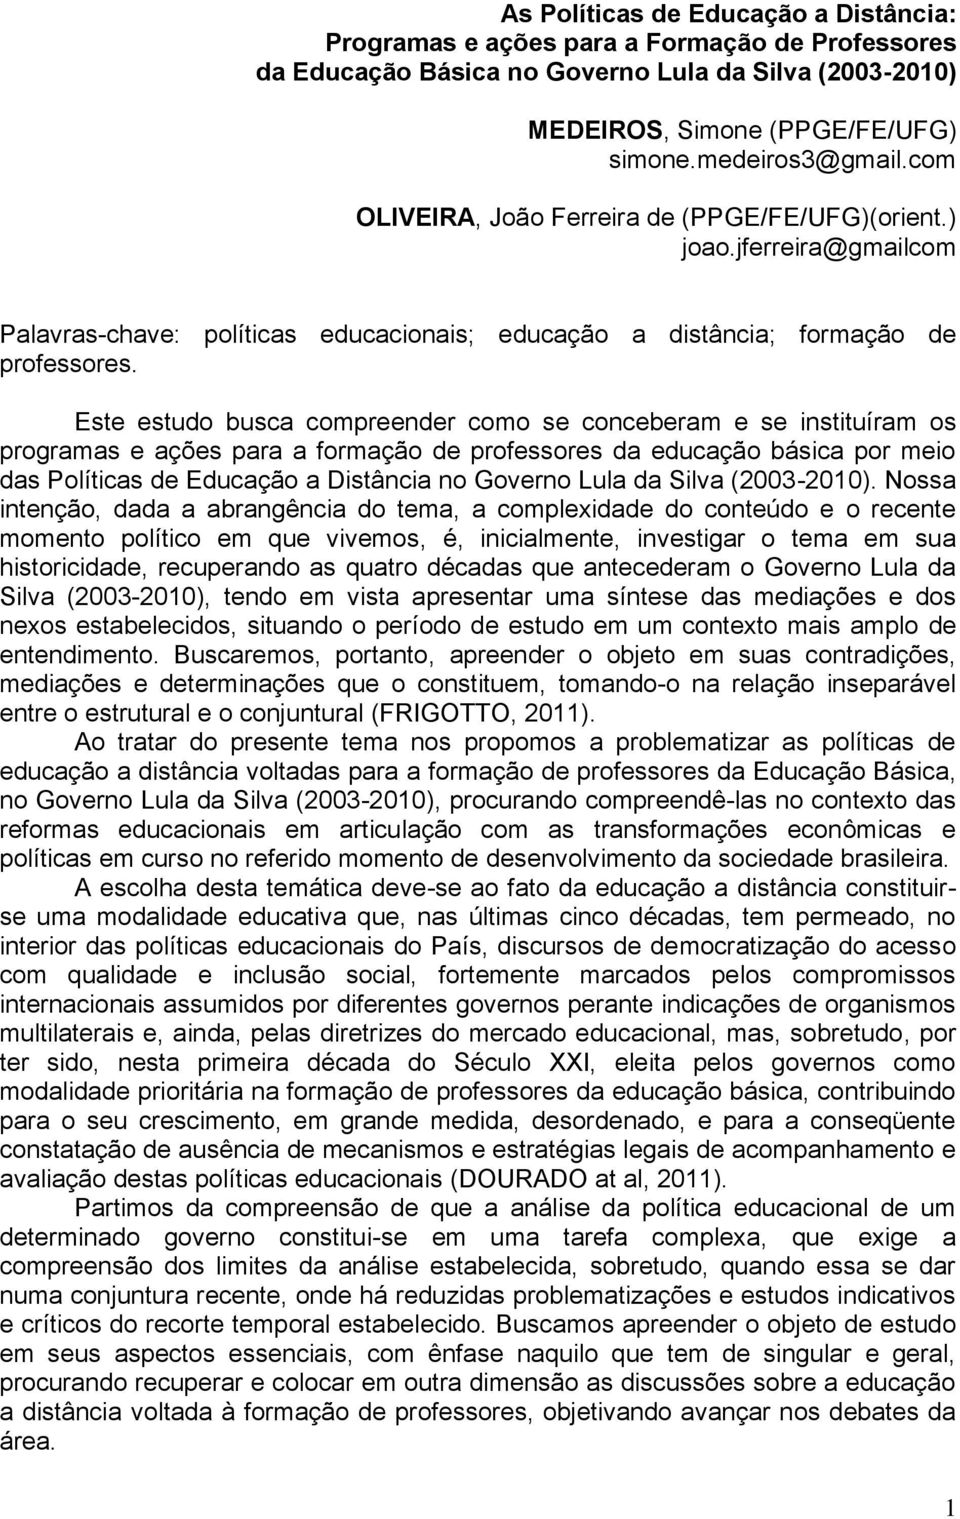 Este estudo busca compreender como se conceberam e se instituíram os programas e ações para a formação de professores da educação básica por meio das Políticas de Educação a Distância no Governo Lula